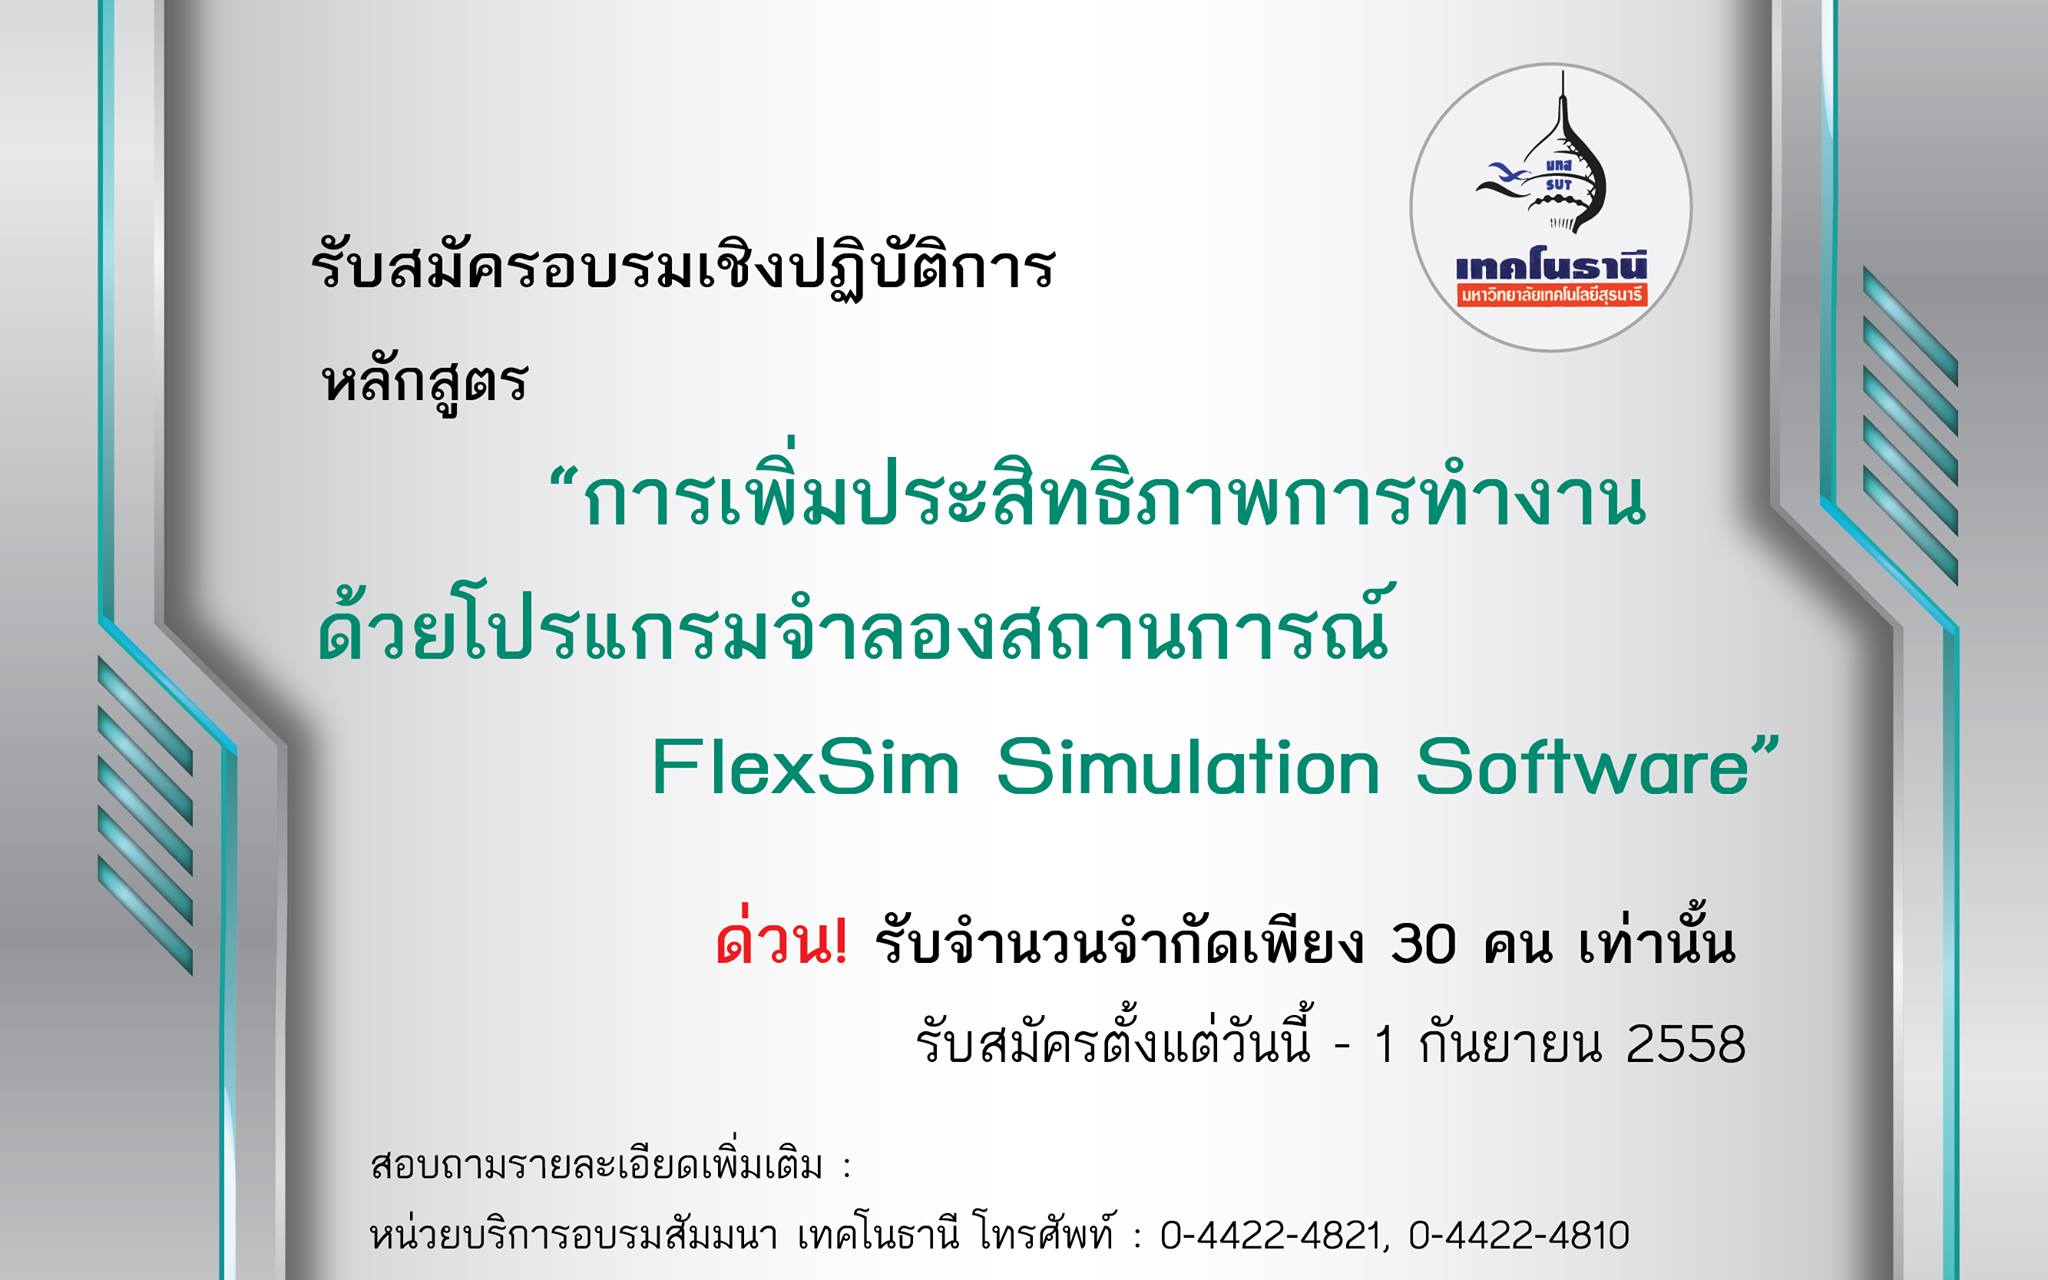 โครงการฝึกอบรมเชิงปฏิบัติการ หลักสูตร  “การเพิ่มประสิทธิภาพการทำงานด้วยโปรแกรมจำลองสถานการณ์ FlexSim Simulation Software”